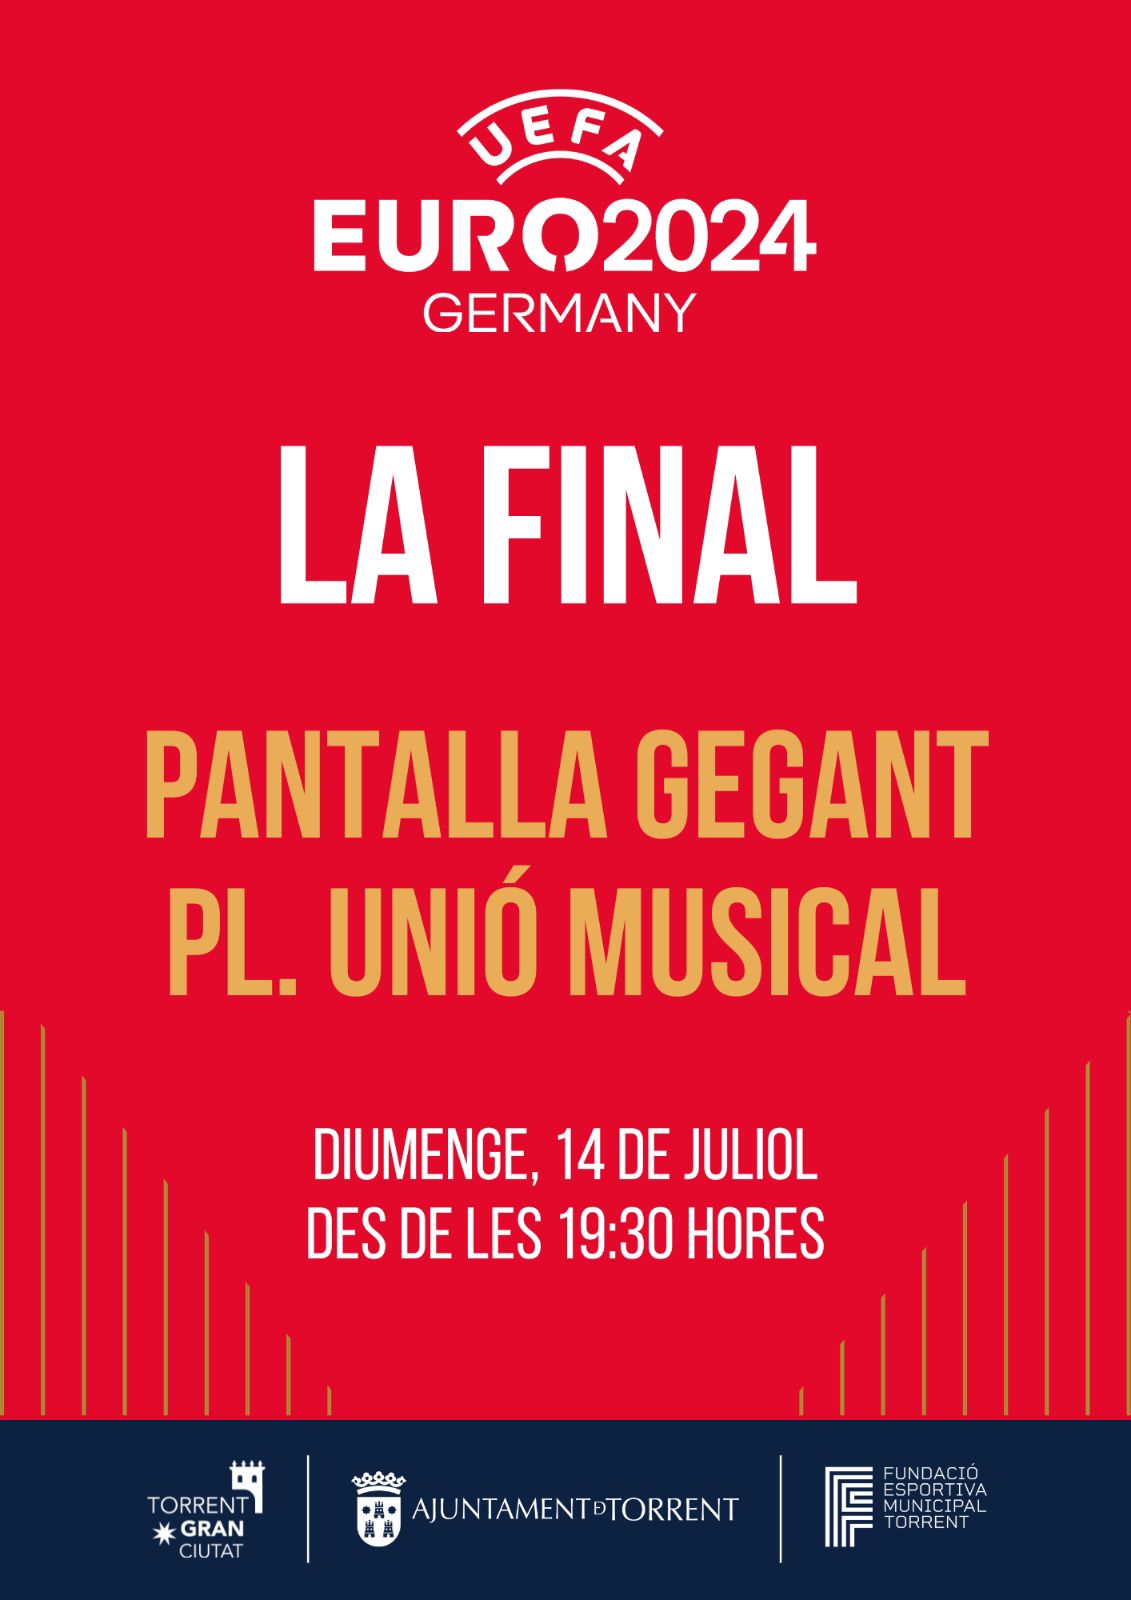 Torrent vivirá la Final de la Eurocopa con pantalla gigante en la Plaza Unió Musical